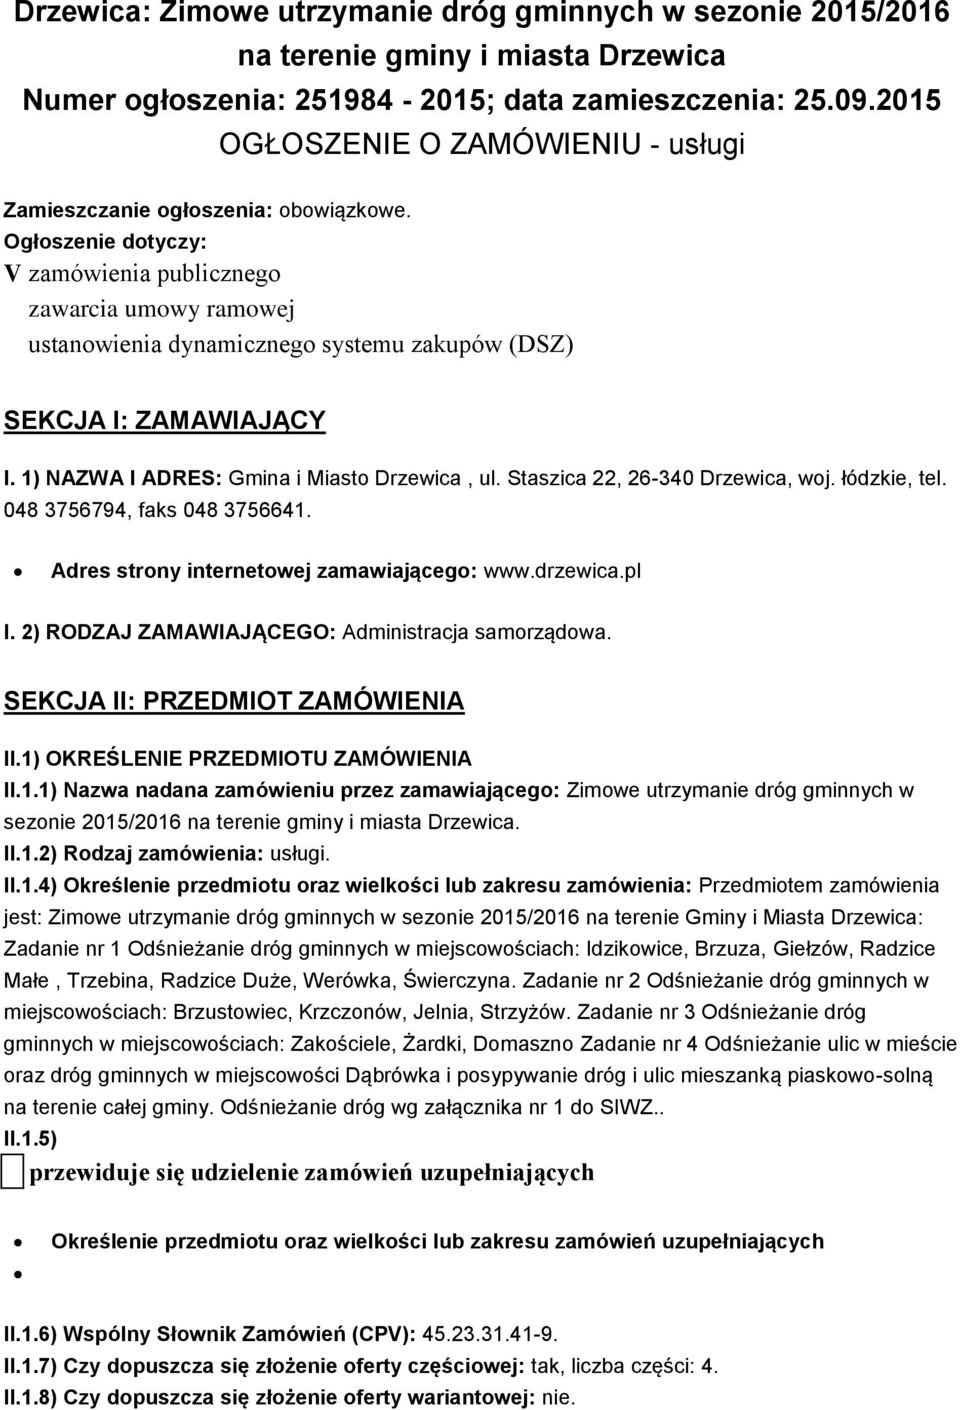 Ogłoszenie dotyczy: V zamówienia publicznego zawarcia umowy ramowej ustanowienia dynamicznego systemu zakupów (DSZ) SEKCJA I: ZAMAWIAJĄCY I. 1) NAZWA I ADRES: Gmina i Miasto Drzewica, ul.